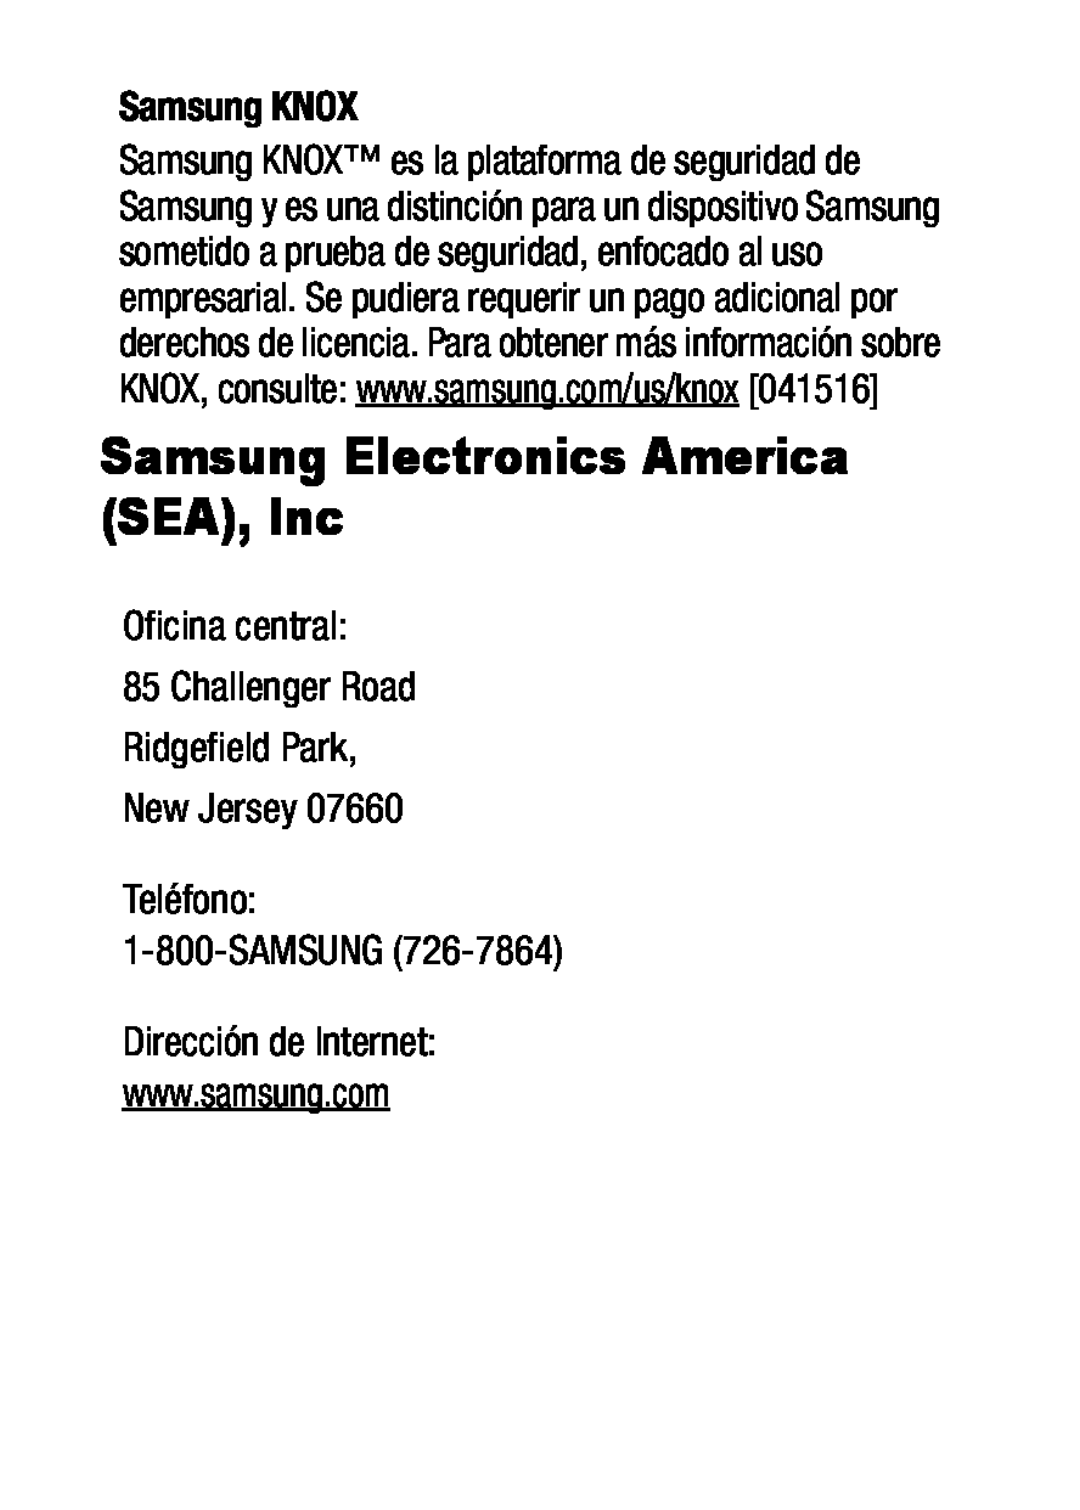 1-800-SAMSUNG (726-7864) Galaxy S5 Metro PCS